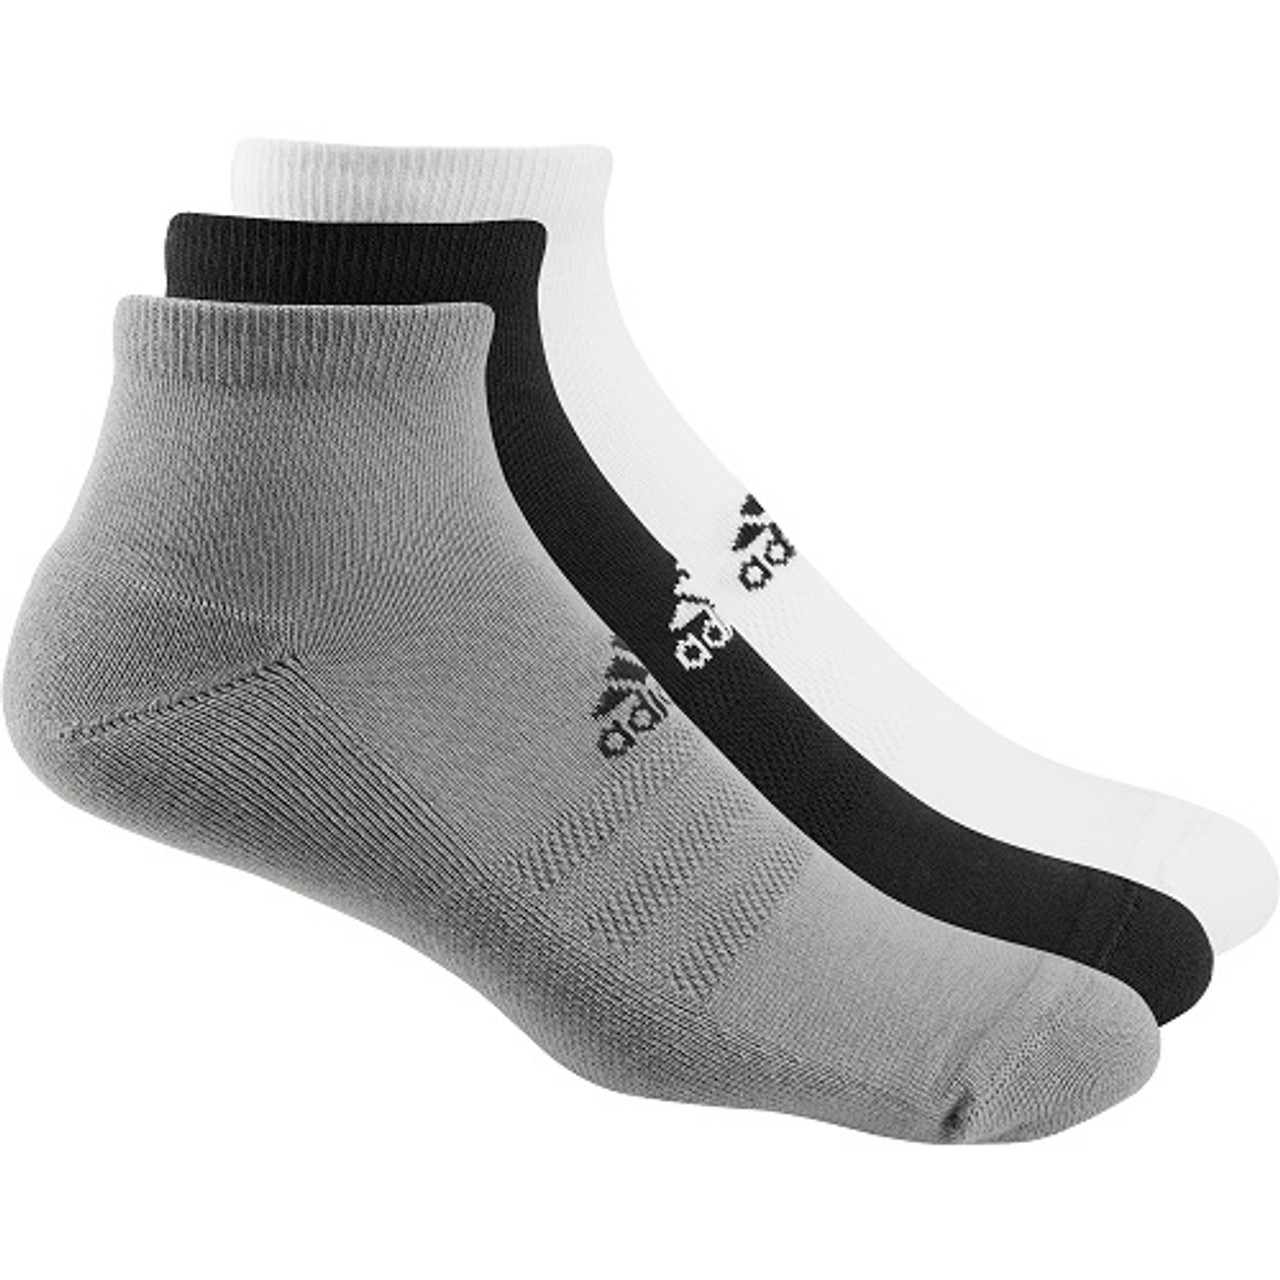 Men's Ankle Socks (3-Pack)